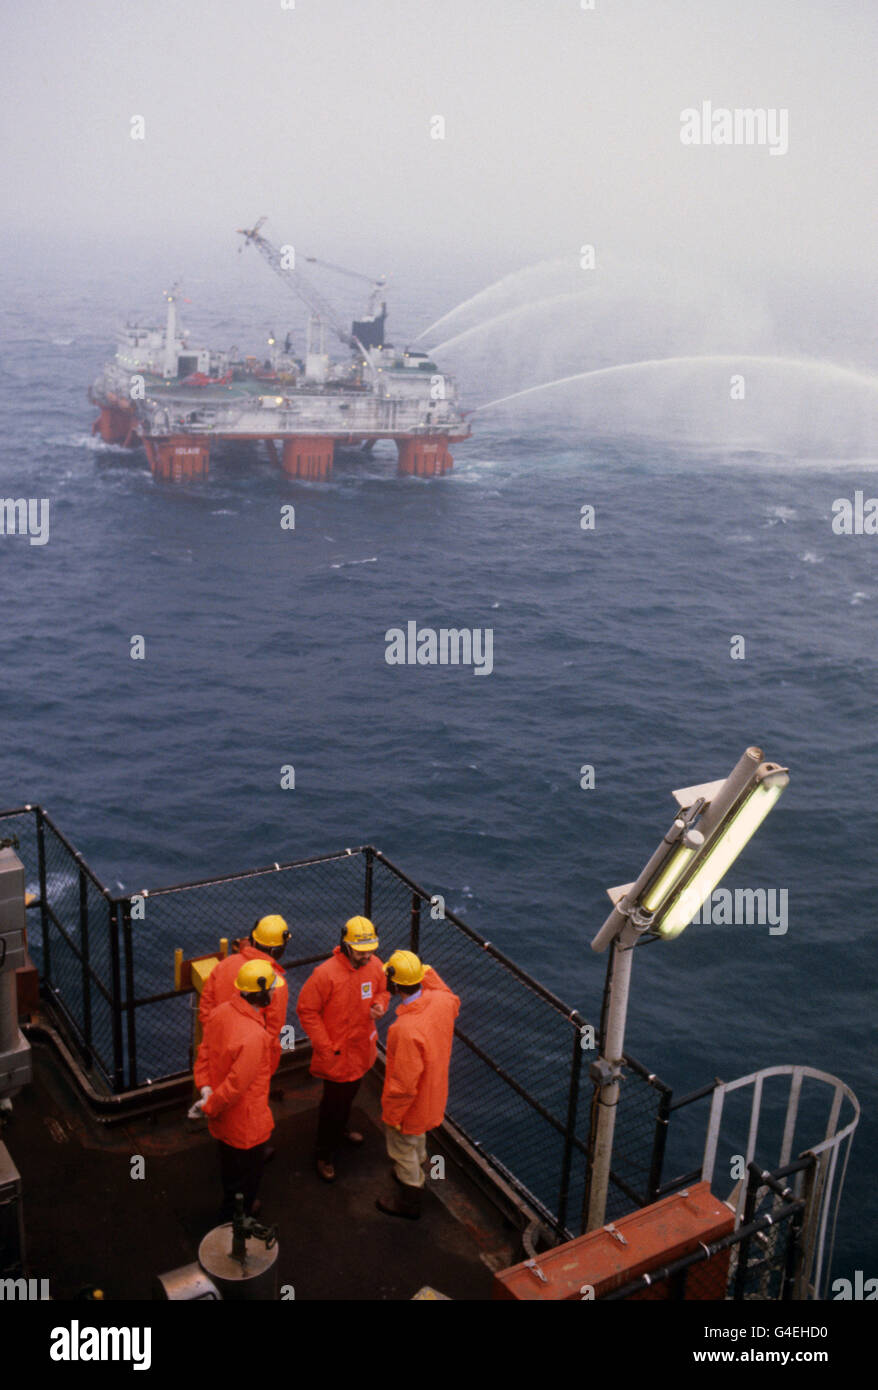 Le Prince de Galles (extrême droite) en conversation sur la plate-forme BP Forties Bravo en mer du Nord.À distance, le navire de secours « Iolair » teste ses flexibles. Banque D'Images